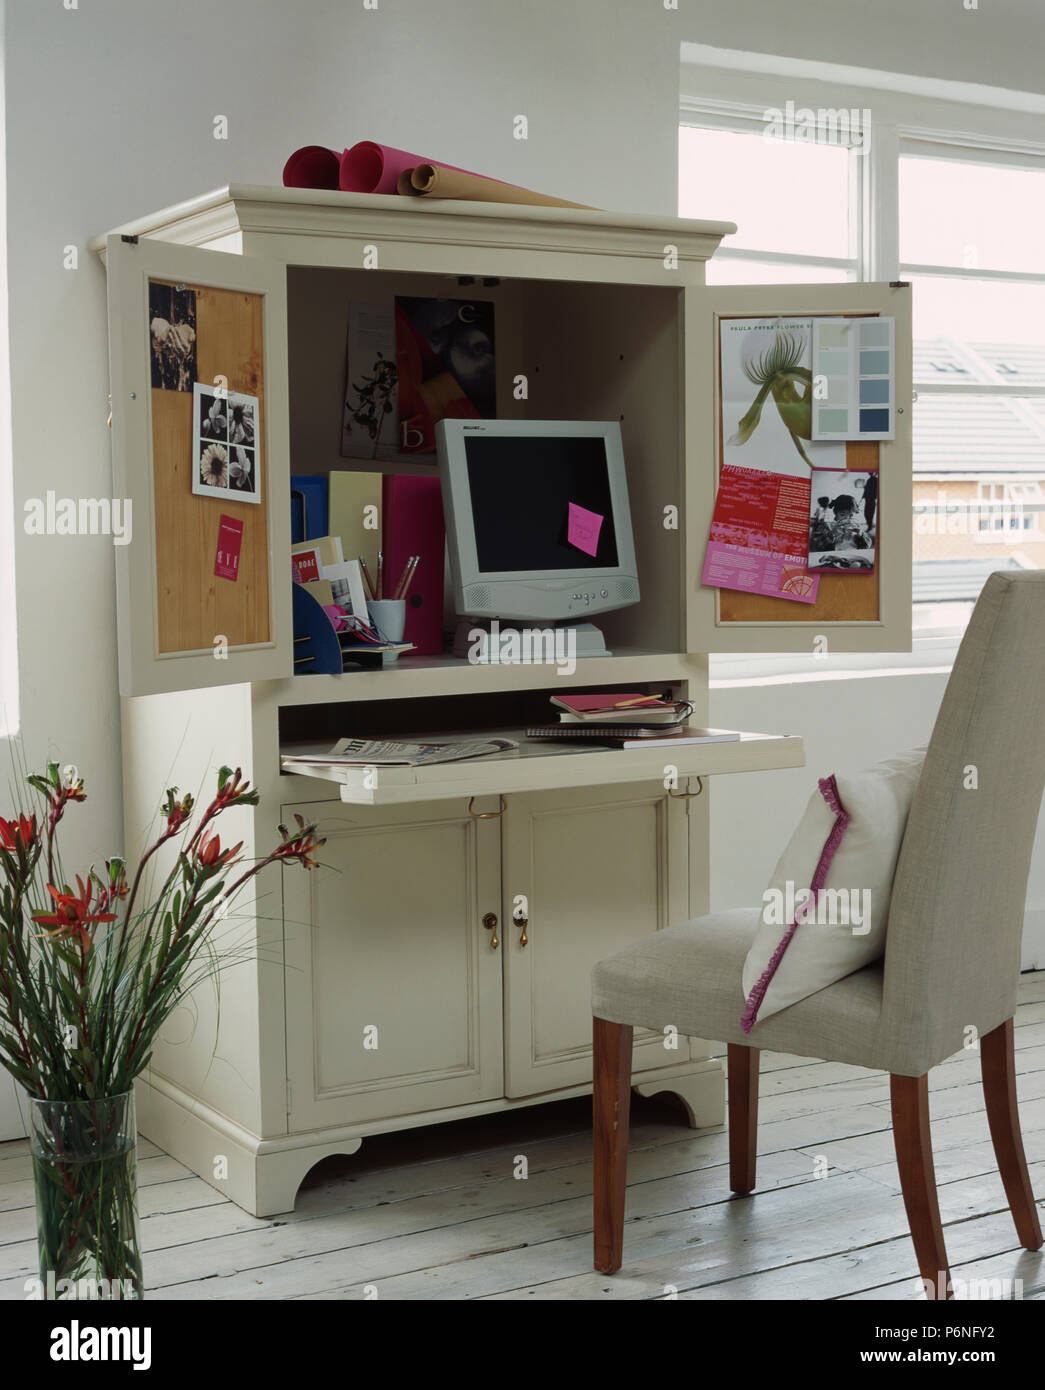 Masquer votre maison loin des comptes dans ce bureau à domicile conçu de façon compacte Banque D'Images